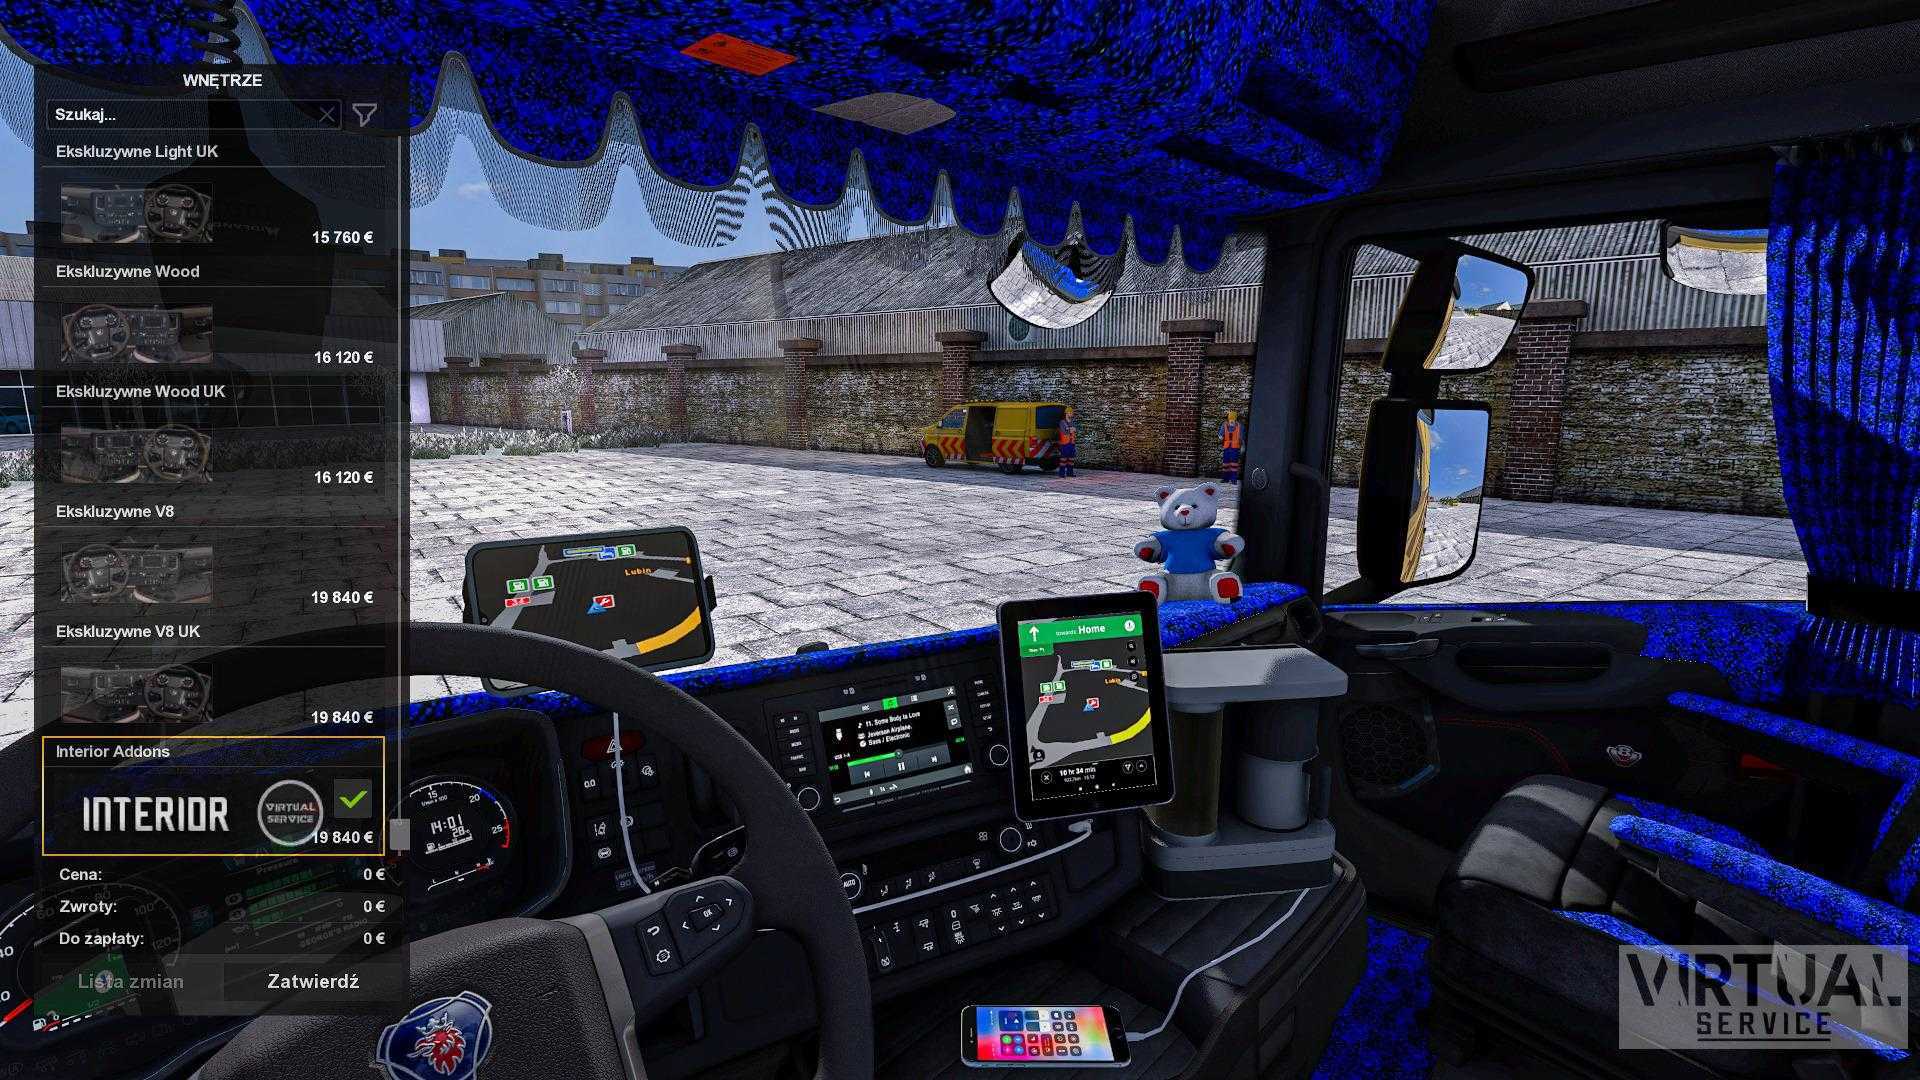 Моды для euro truck simulator. Салон Скания в етс 2. Салон на Scania s ets2. Салоны Скания в ETS 2. Скания для етс 2 1.39.